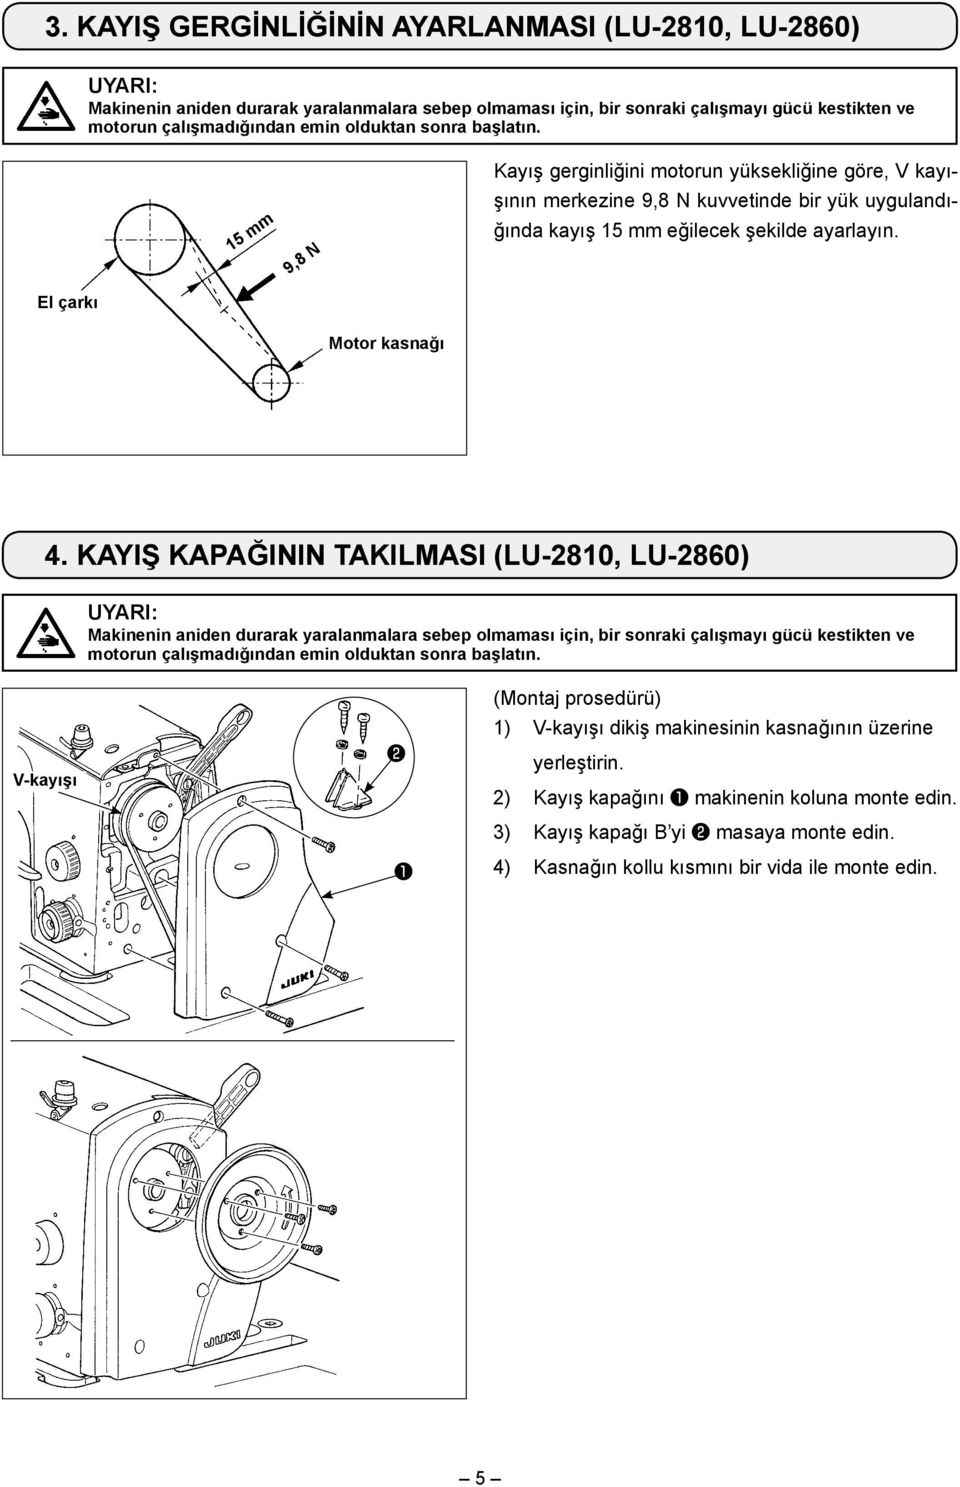 KAYIŞ KAPAĞININ TAKILMASI (LU-2810, LU-2860) V-kayışı (Montaj prosedürü) 1) V-kayışı dikiş makinesinin kasnağının üzerine